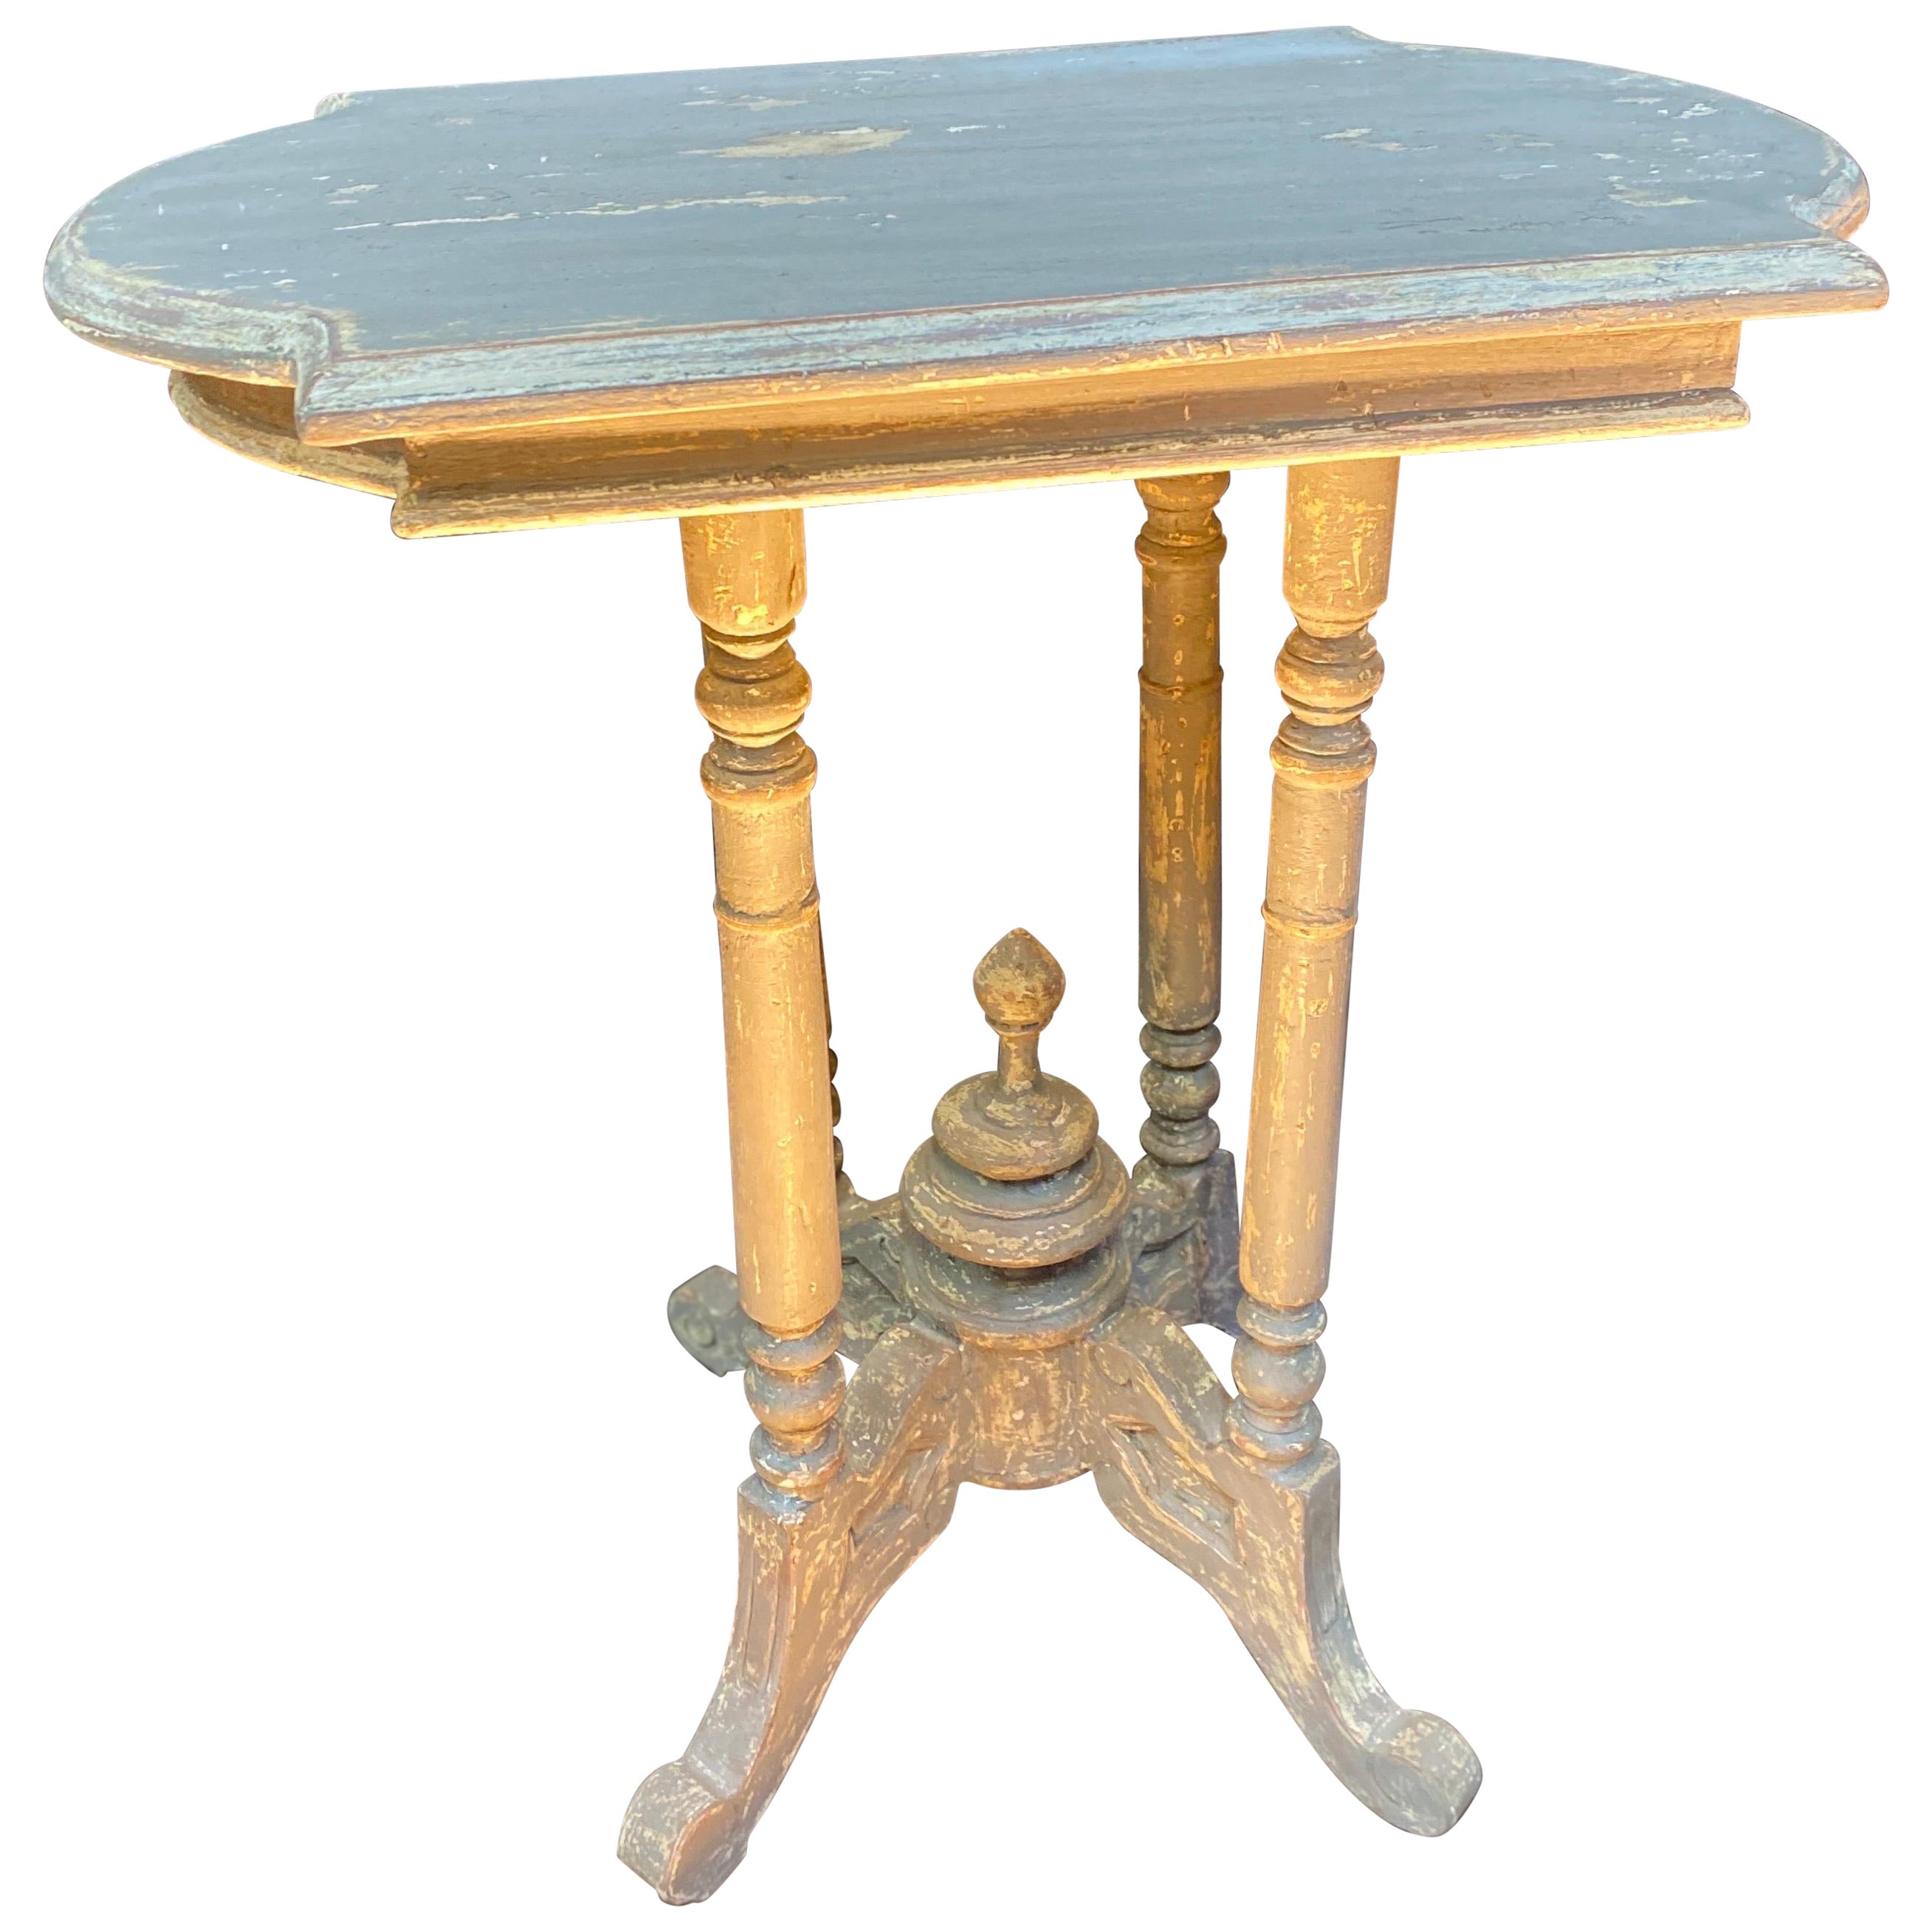 The Pedestal table de Napoléon III avec patina datant du 19ème siècle 